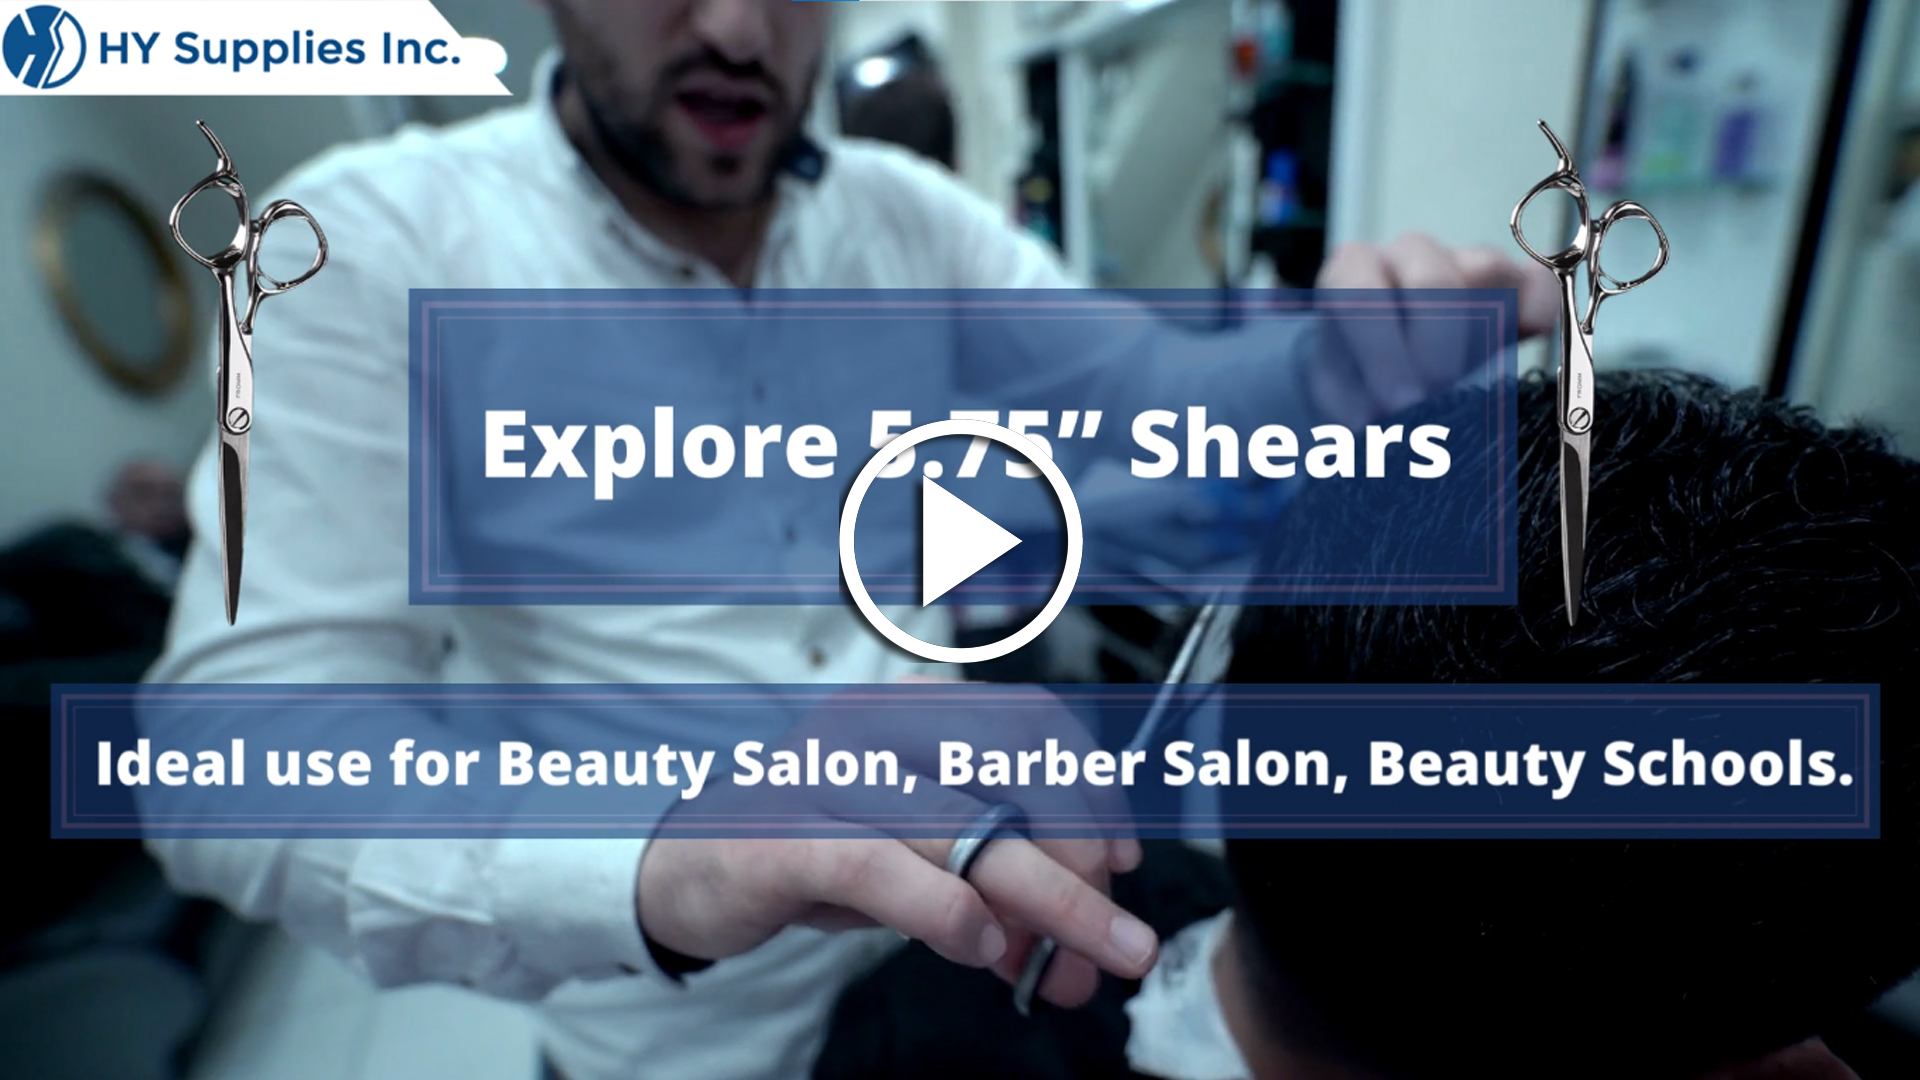 Explore 5.75” Shears